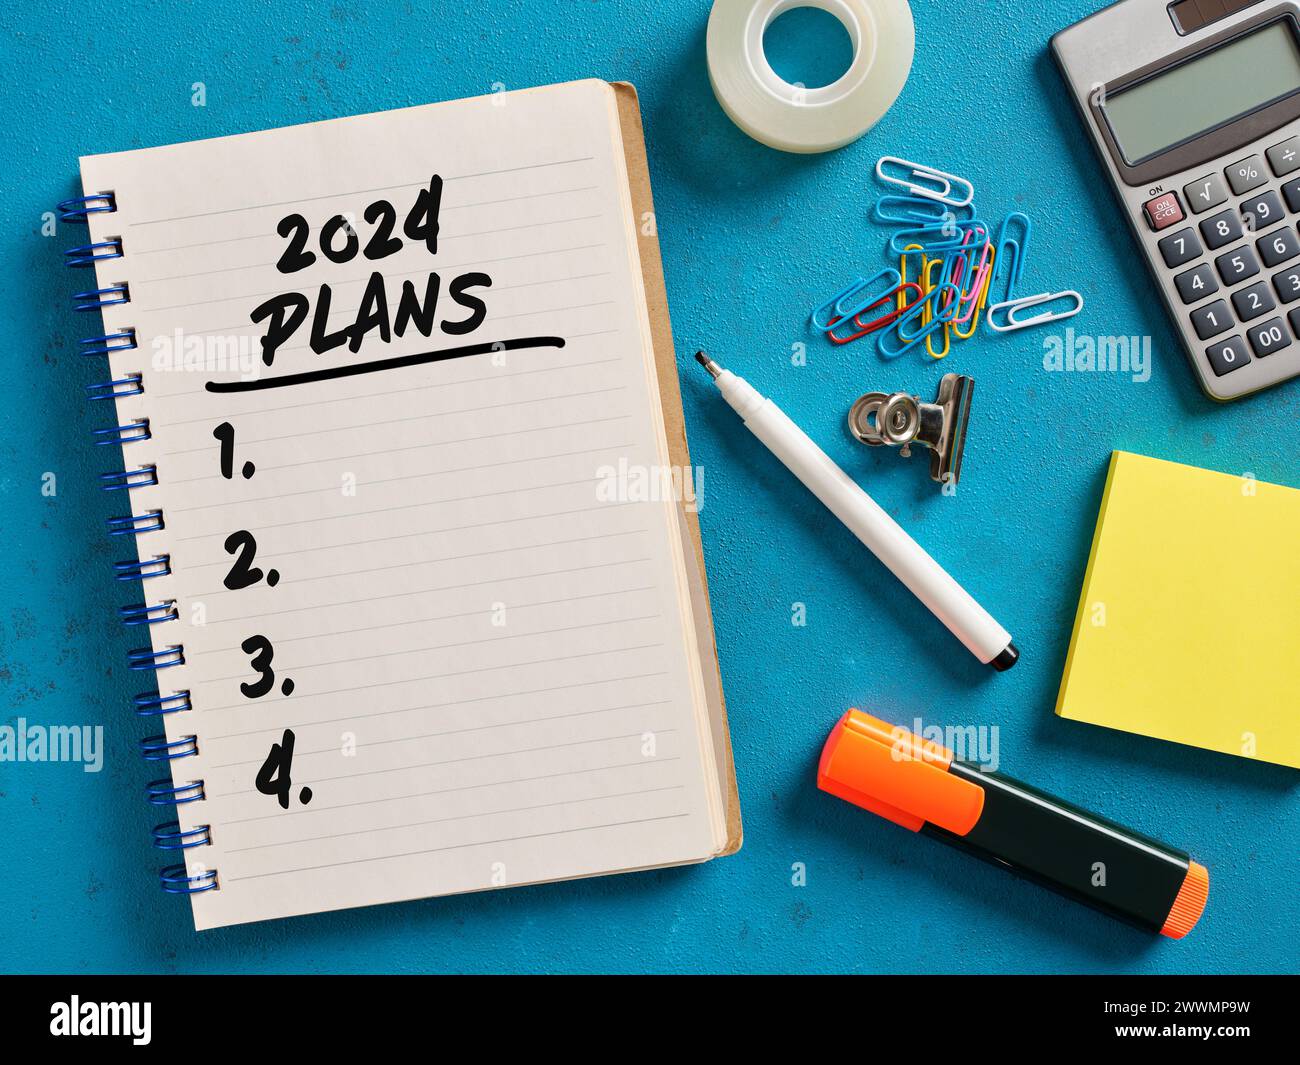 2024 plans liste manuscrite sur un cahier. Stratégie commerciale, planification et concept de réalisation des objectifs. Banque D'Images